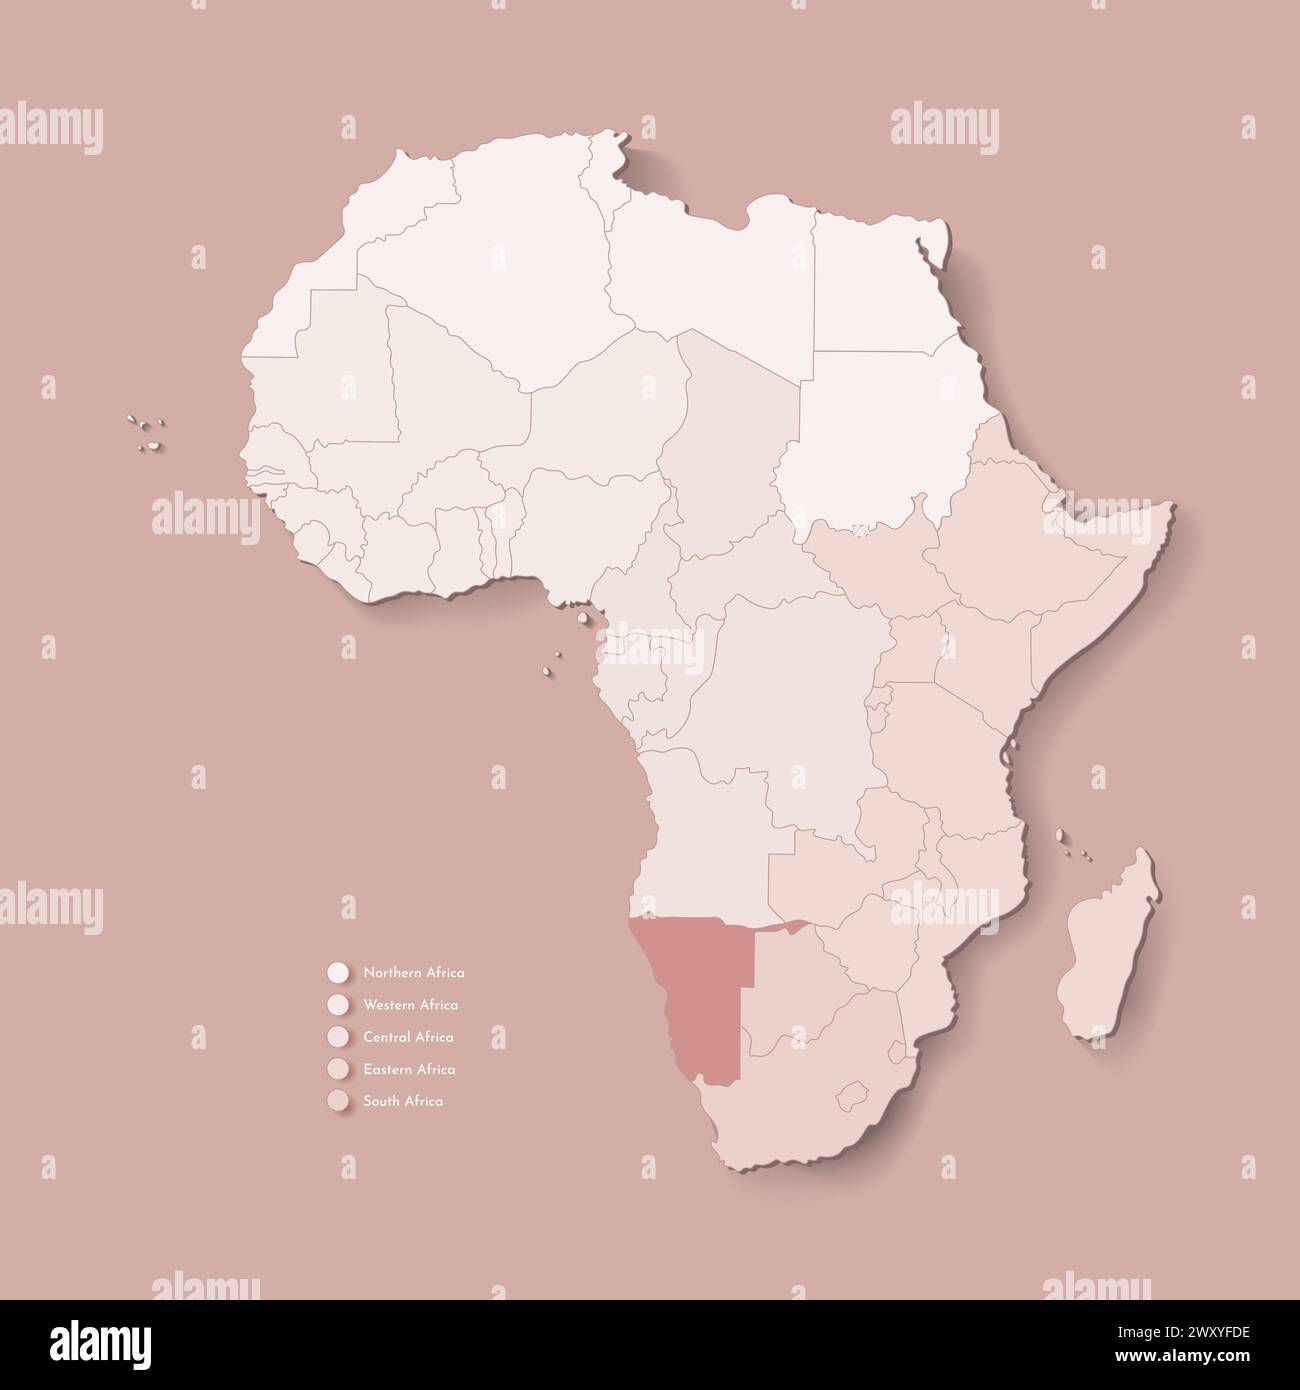 Vektor-Illustration mit afrikanischem Kontinent mit Grenzen aller staaten und markiertem Land Namibia. Politische Karte in braunen Farben mit West-, Süd- und Stock Vektor